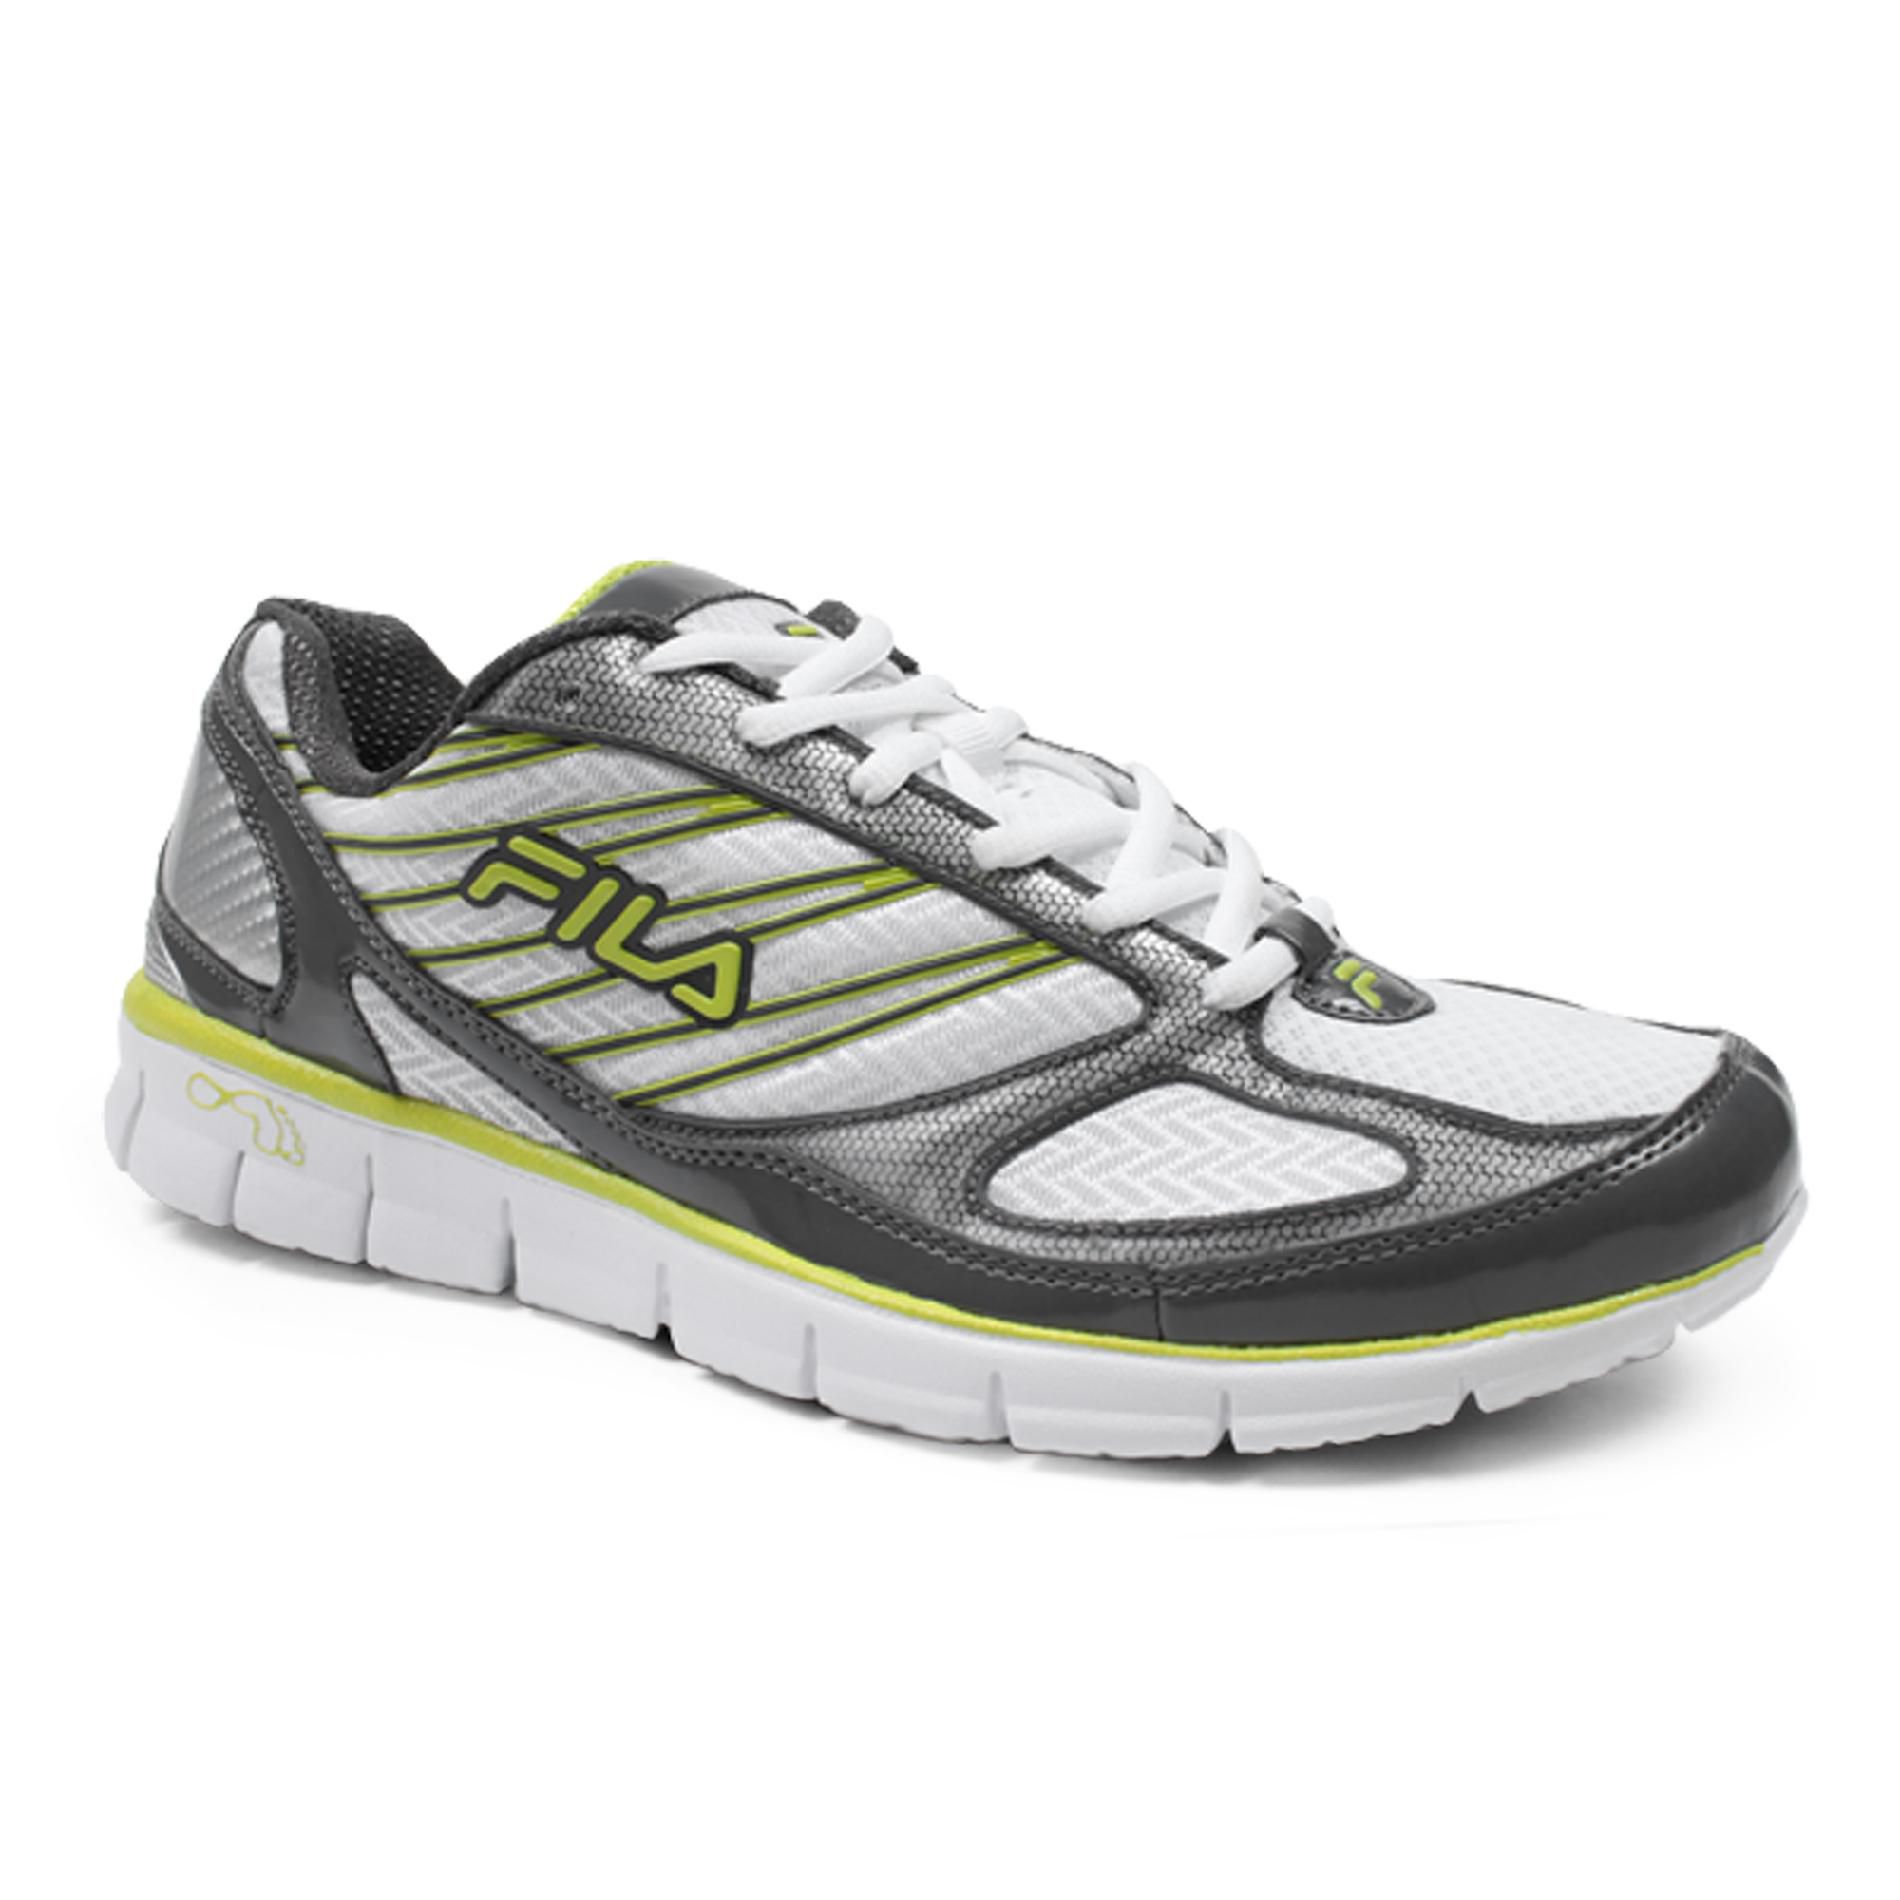 Fila Men's Athletic Shoe Memory 2A Advanced - White/Silver/Lime